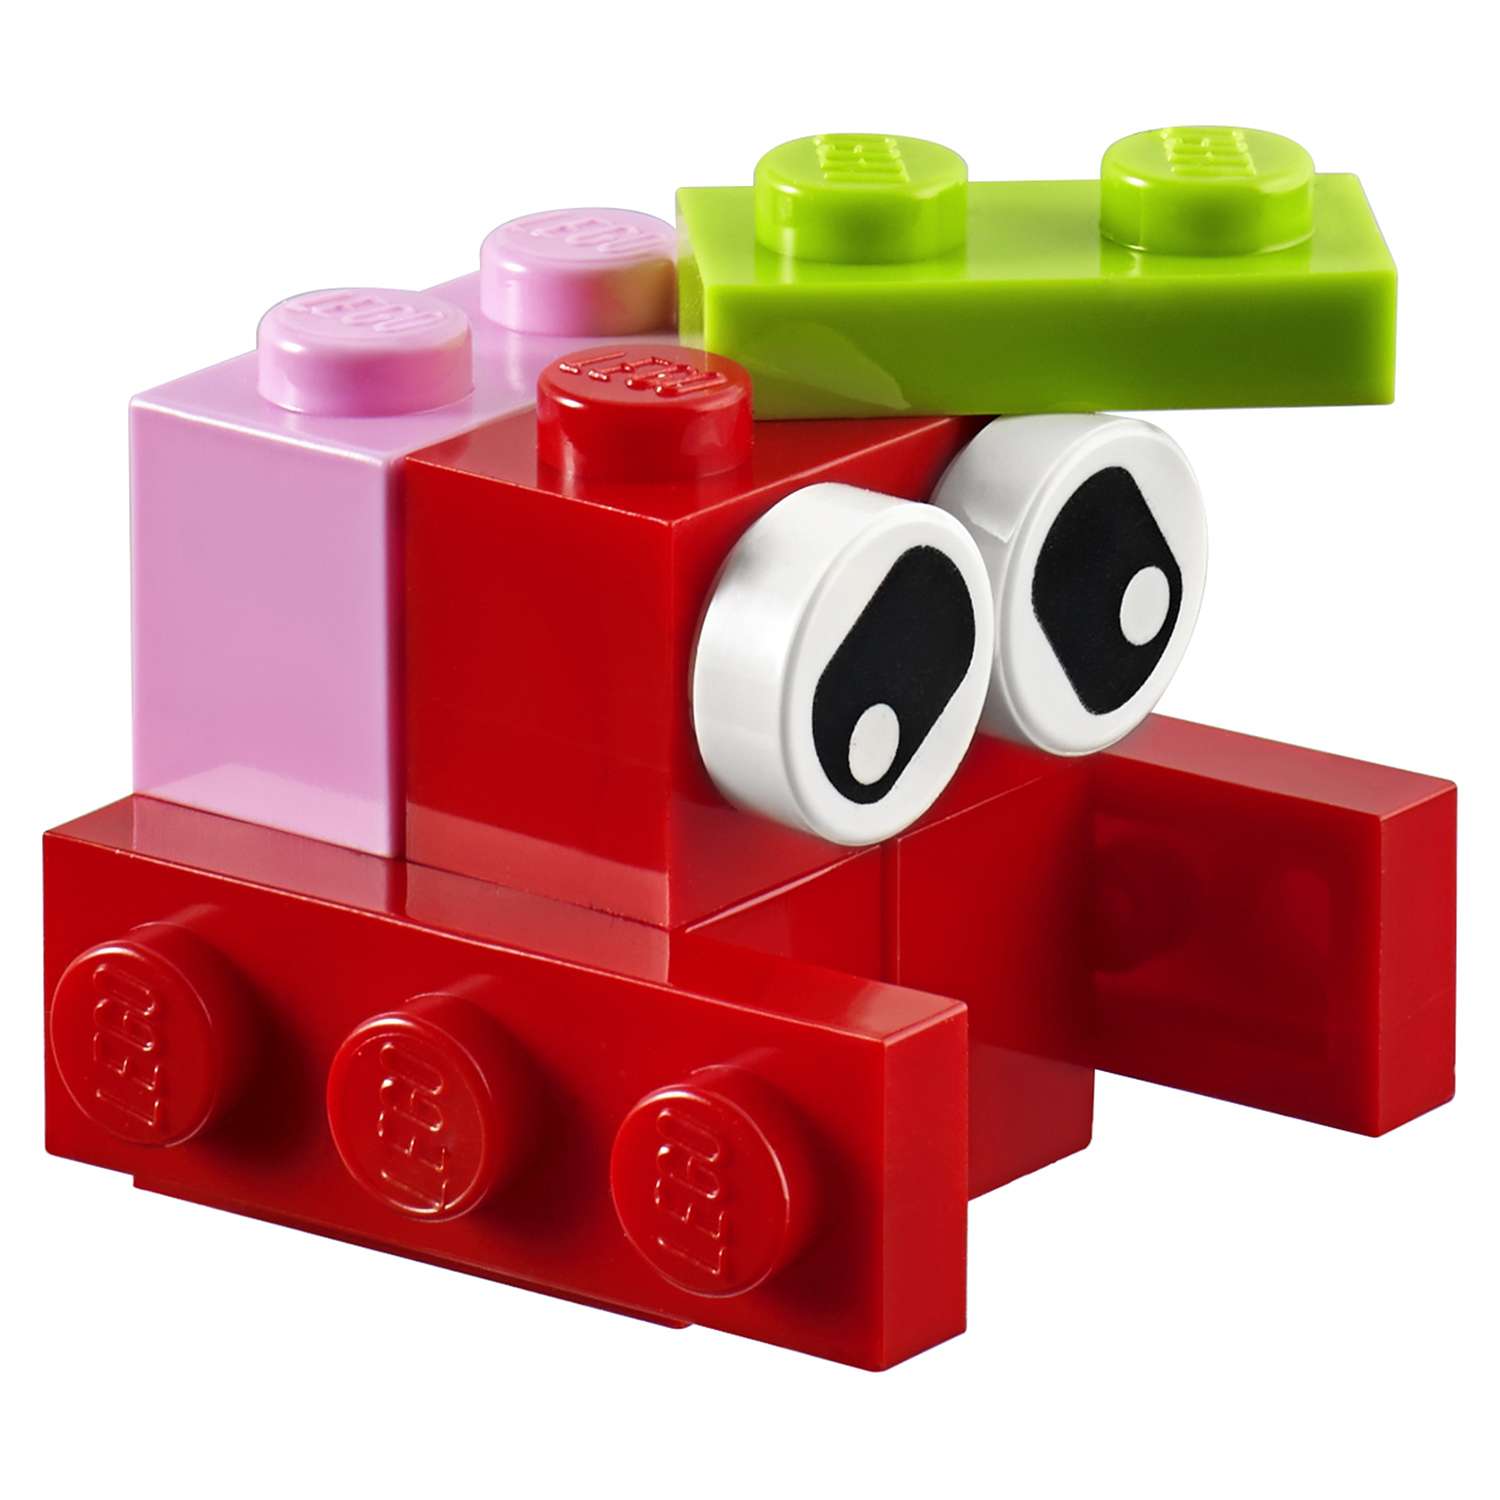 Конструктор LEGO Classic Красный набор для творчества (10707) - фото 9